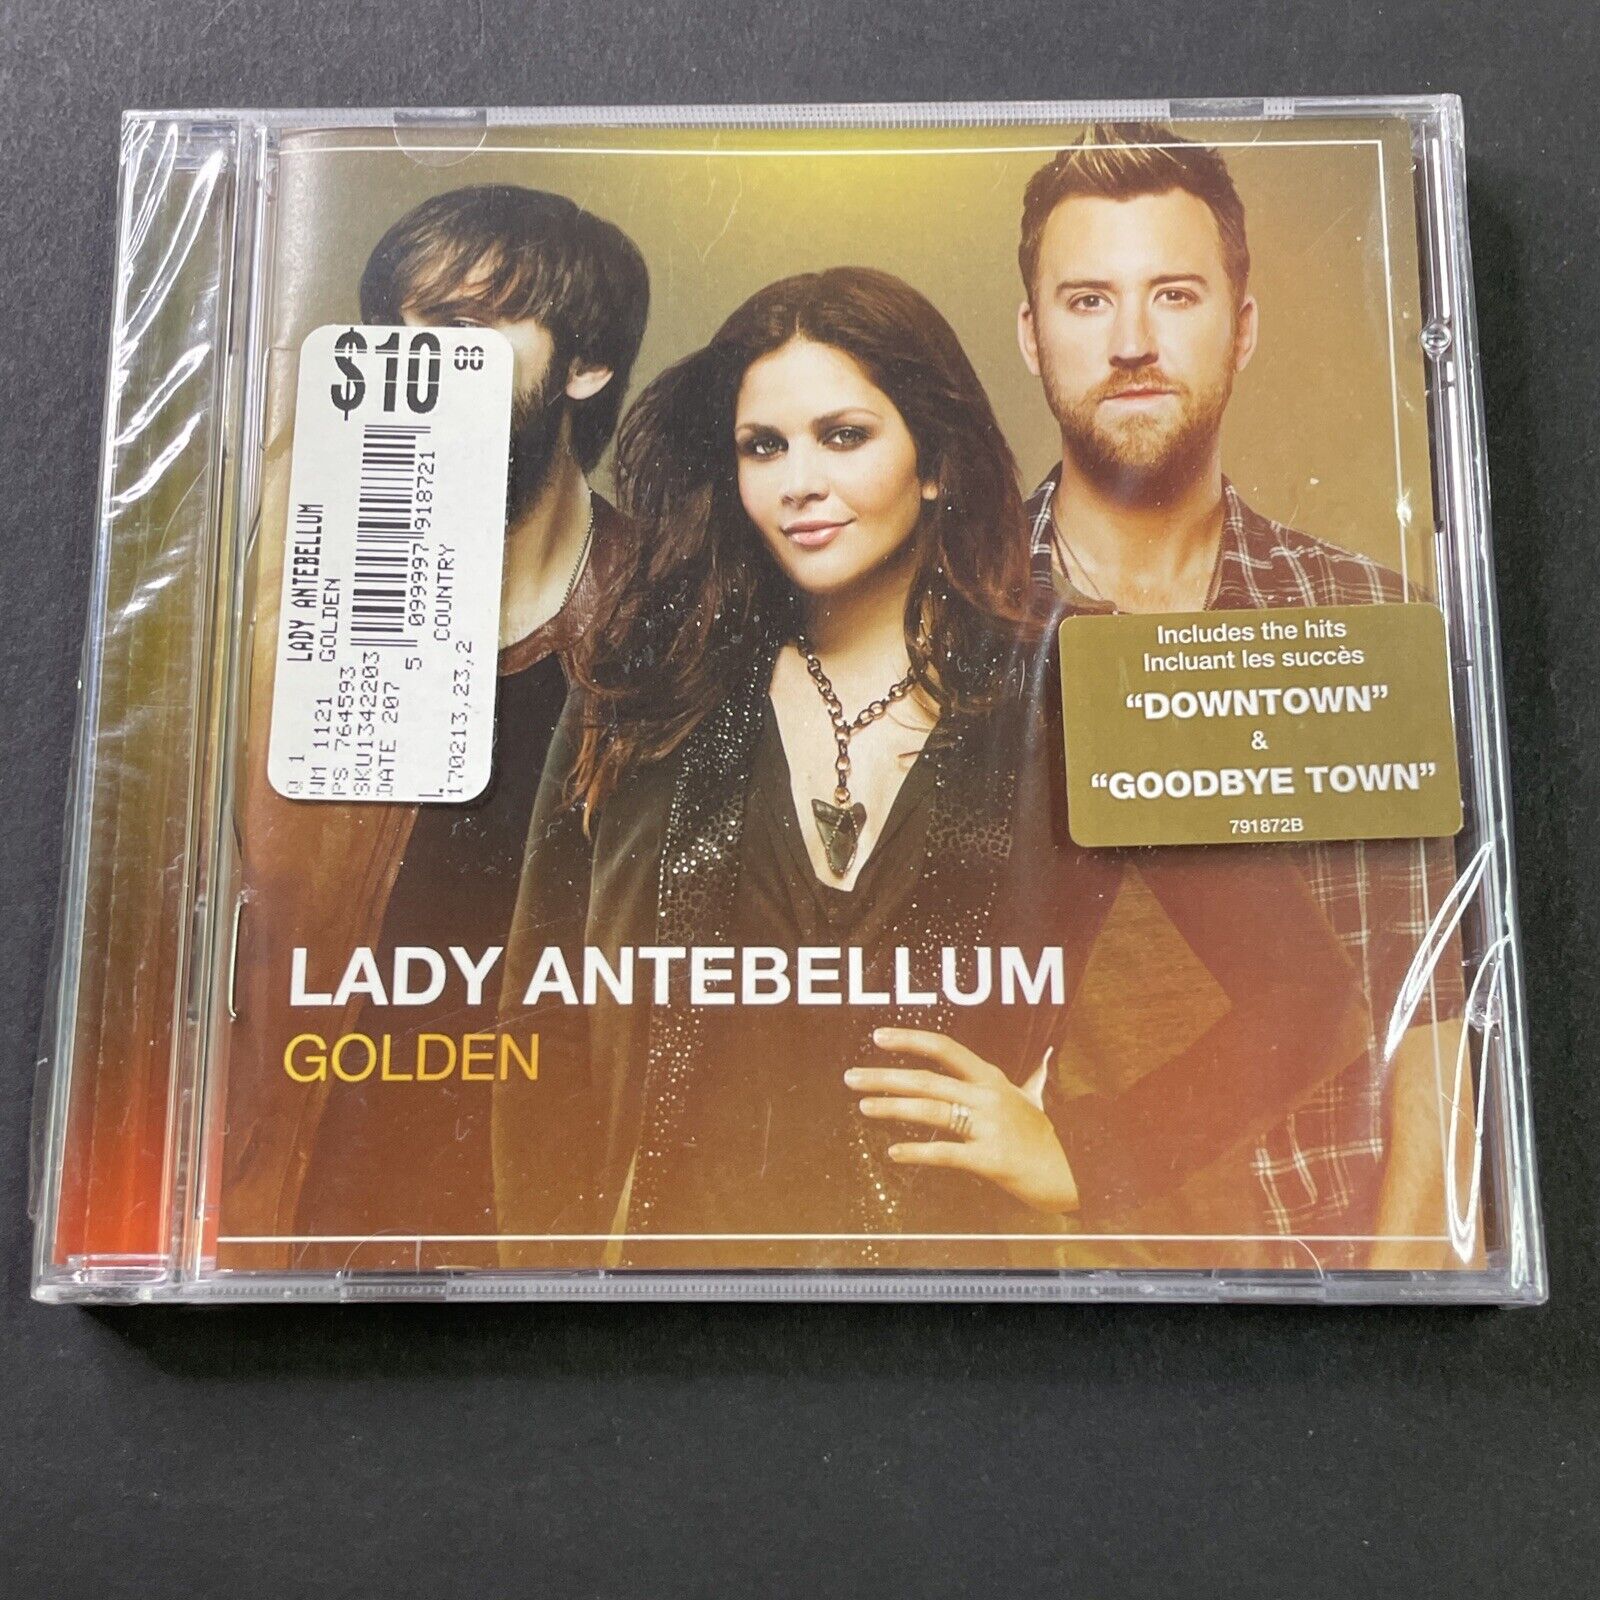 Lady Antebellum, Golden (CD, 2013) BRAND NEW SEALED, Walmart Price Sticker